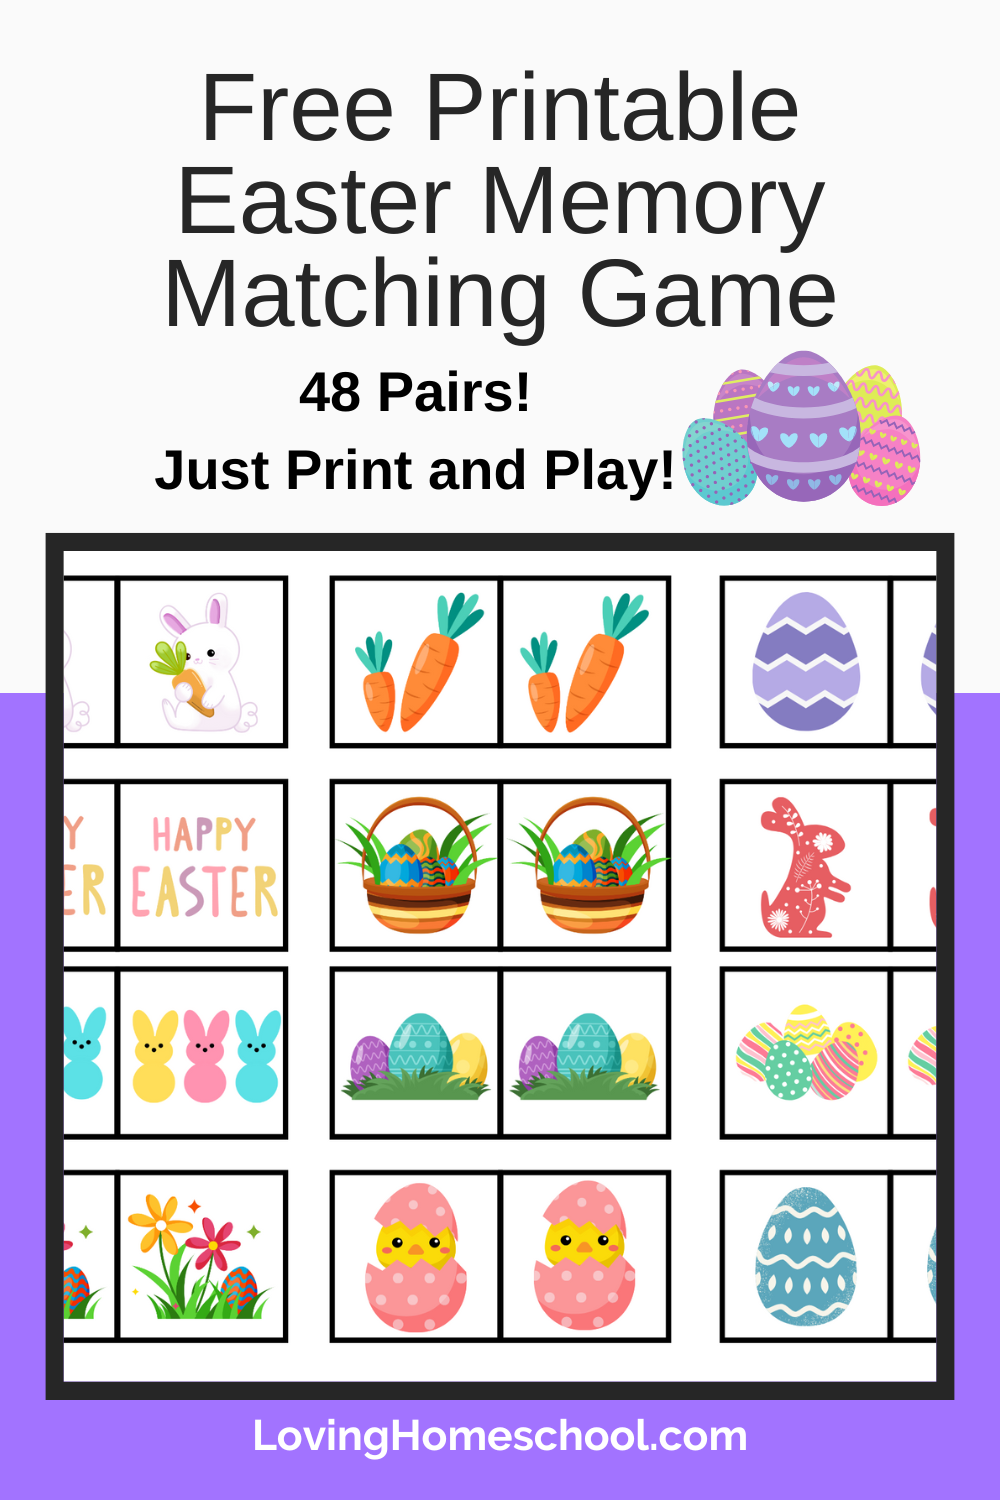 Free Printable Easter Memory Matching Game Pinterest Pin